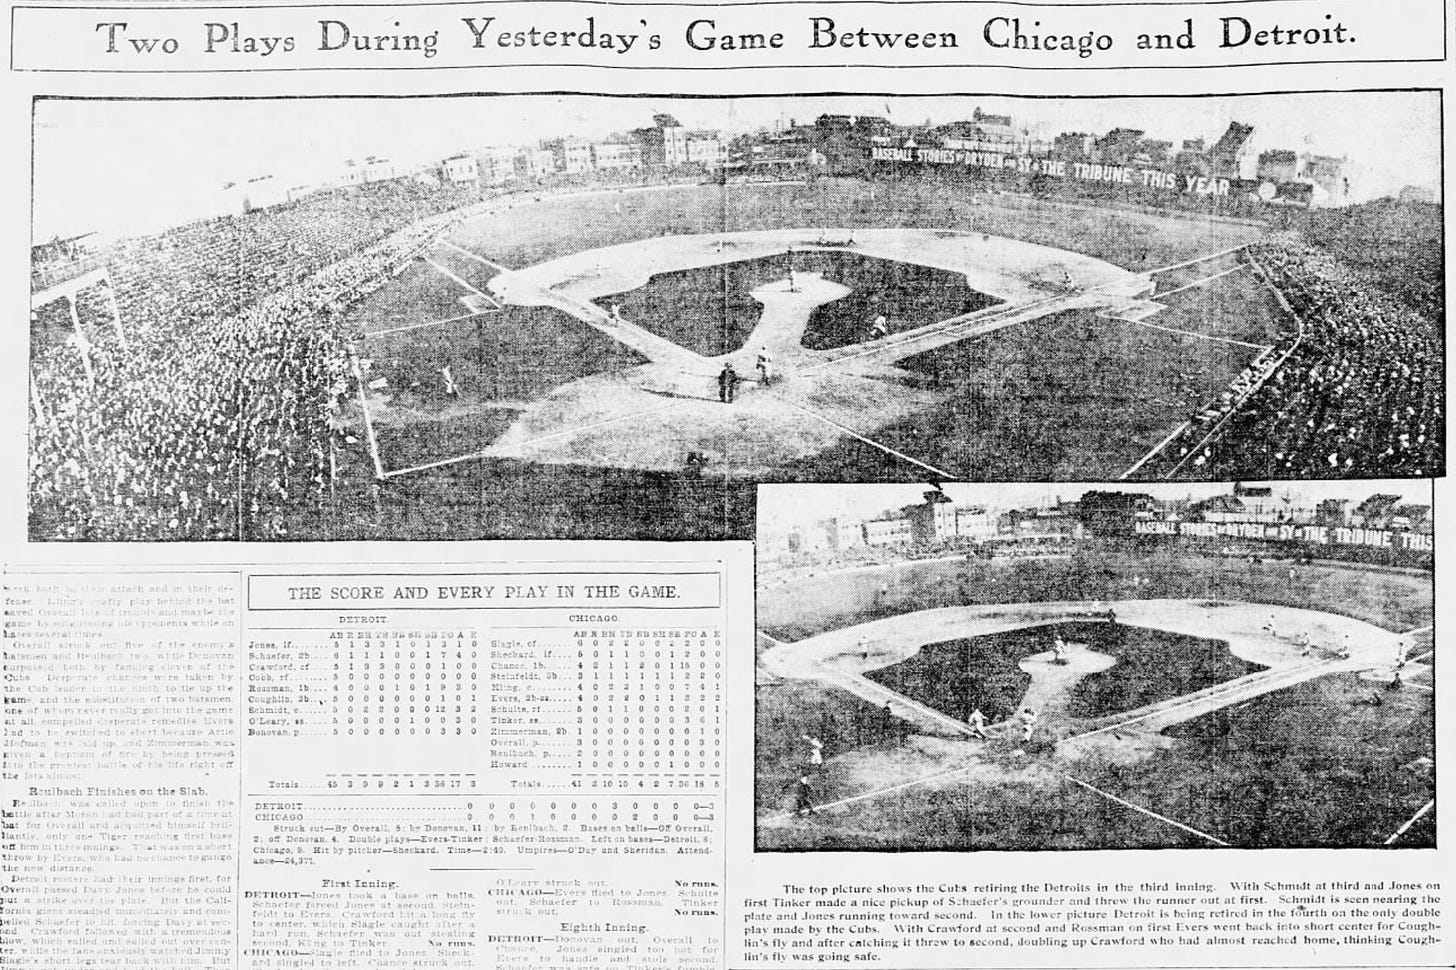 1907 Chicago Tribune